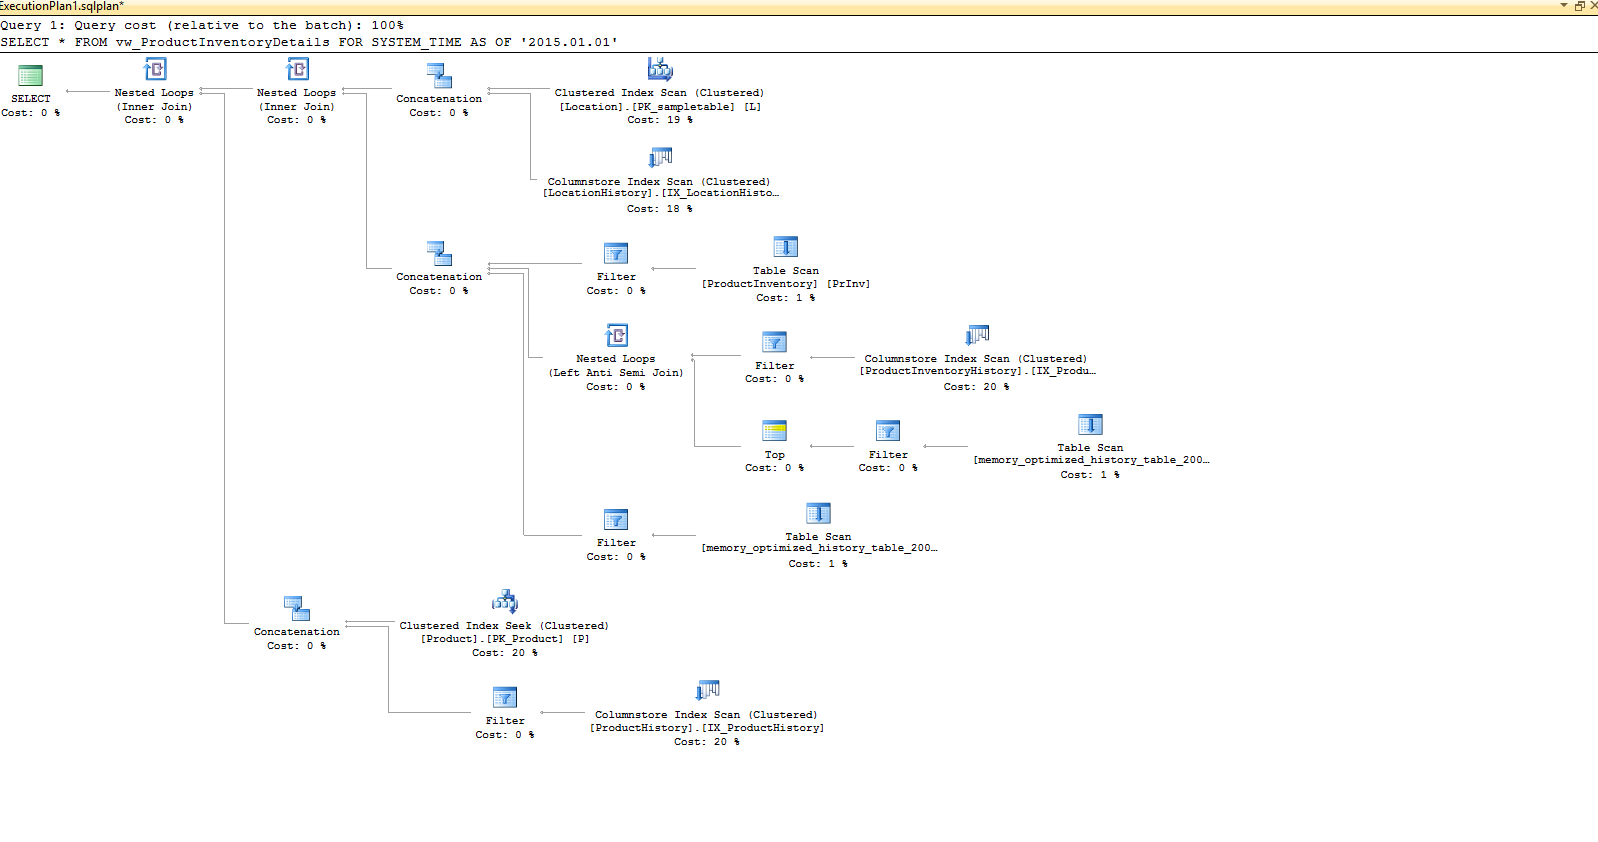 Diagrama que mostra o plano de execução gerado para a consulta SELECT que ilustra que toda a complexidade de lidar com relações temporais é totalmente administrada pelo mecanismo do SQL Server